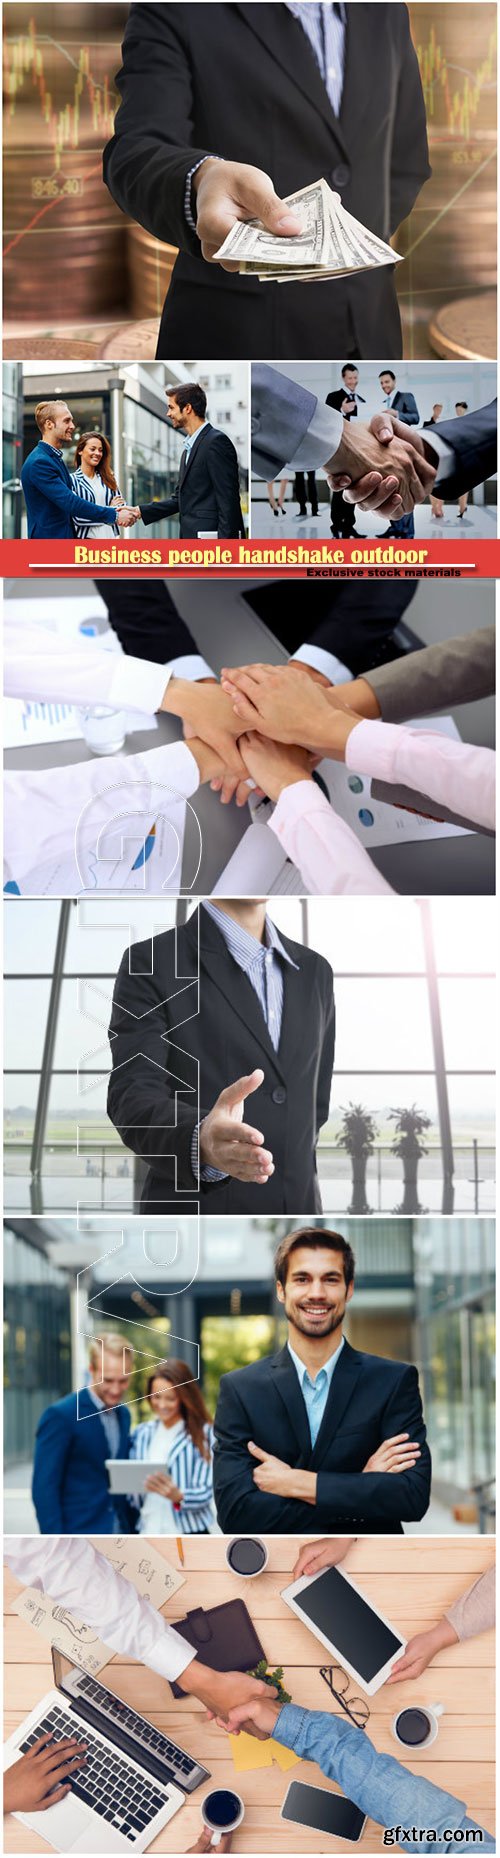 Business people handshake outdoor, bank employees